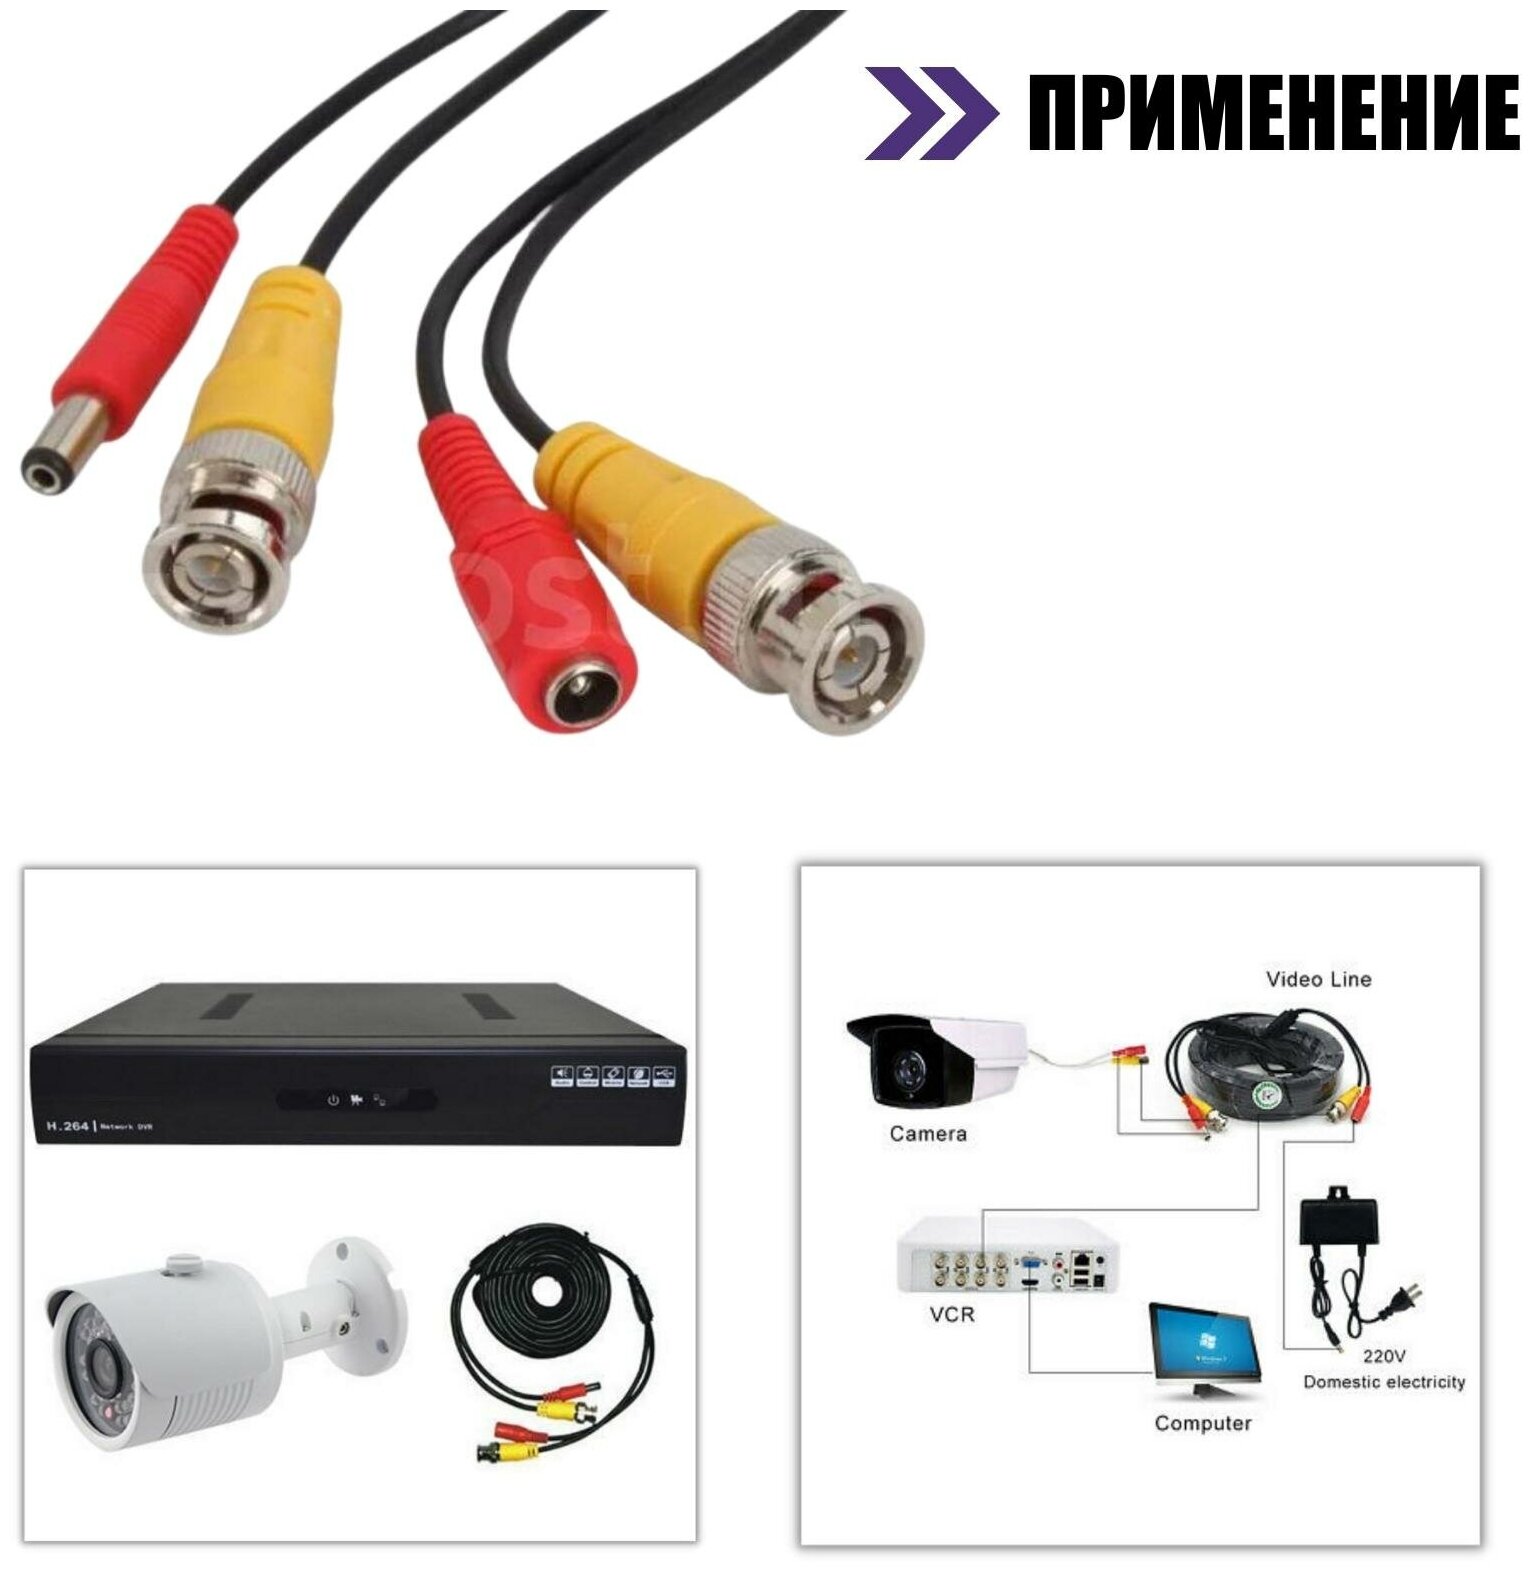 Комплект К-20 для системы видеонаблюдения: кабель BNC/DC 20 м переходники DC(мама) DC(папа) и блок питания